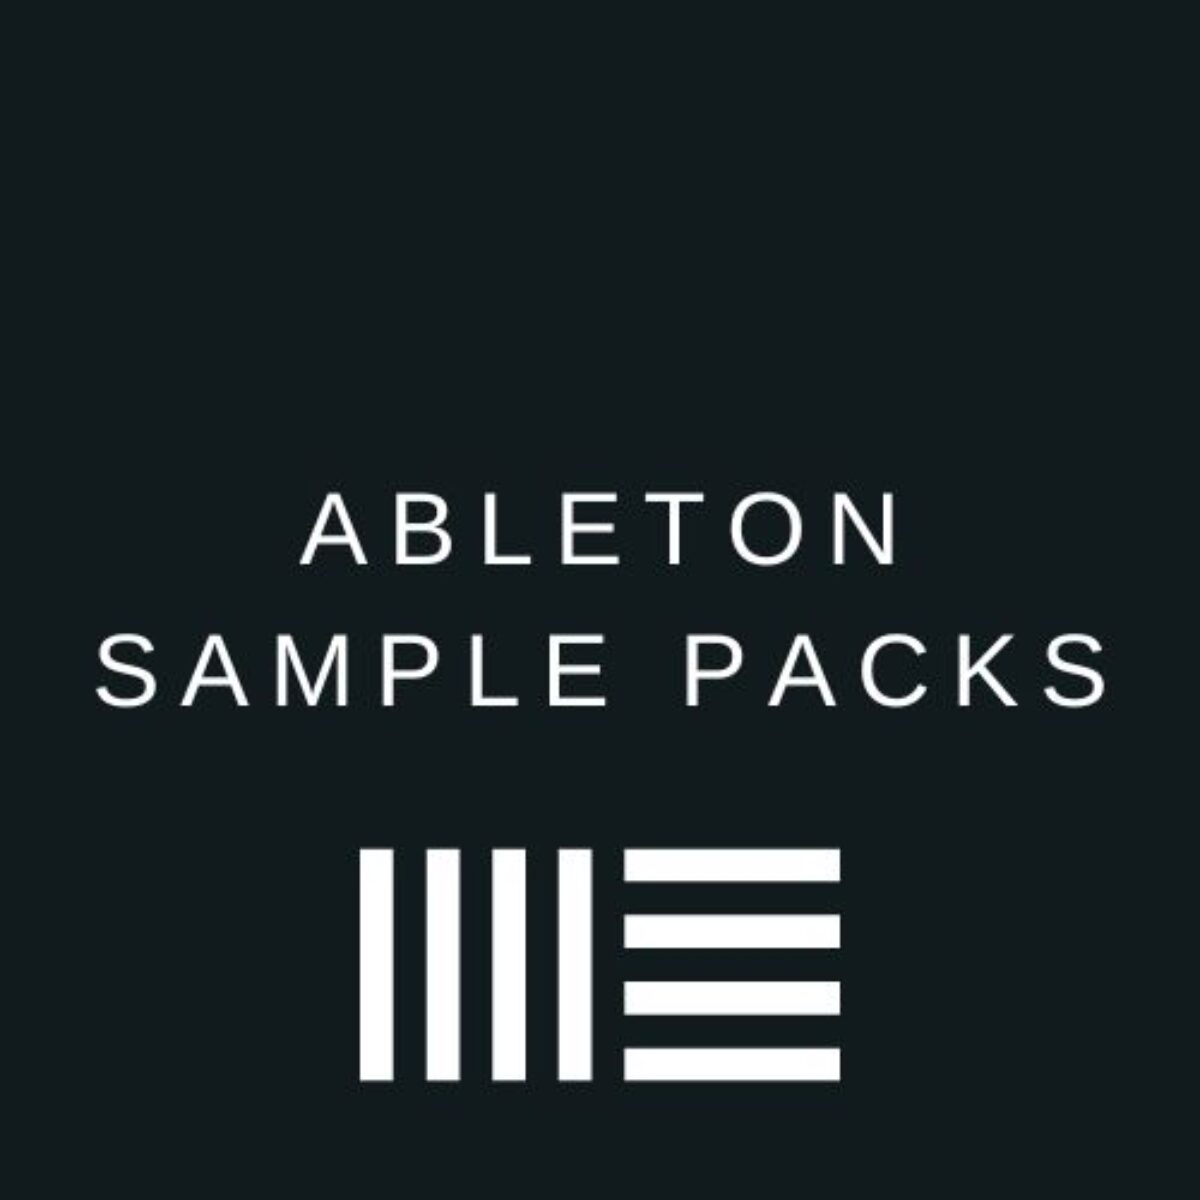 Sample packs for Ableton